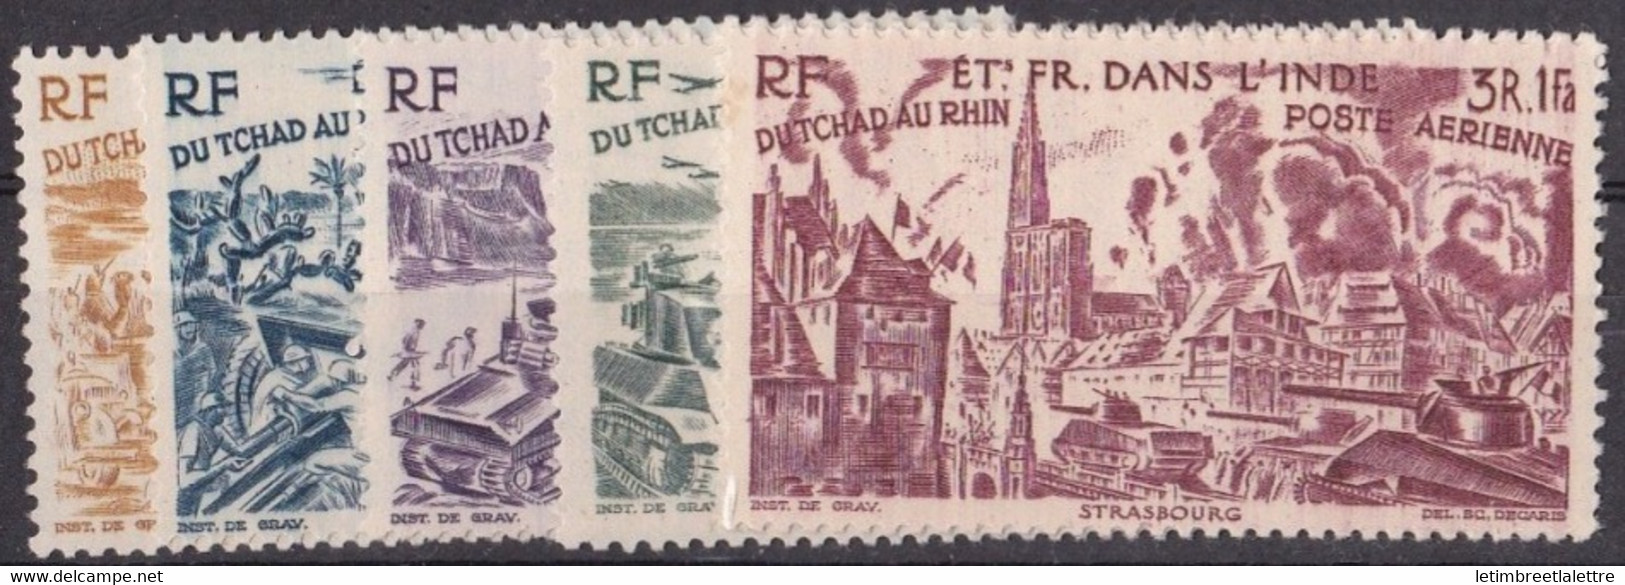 ⭐ Inde - Poste Aérienne - YT N° 11 à 16 ** - Neuf Sans Charnière - 1946 ⭐ - Unused Stamps